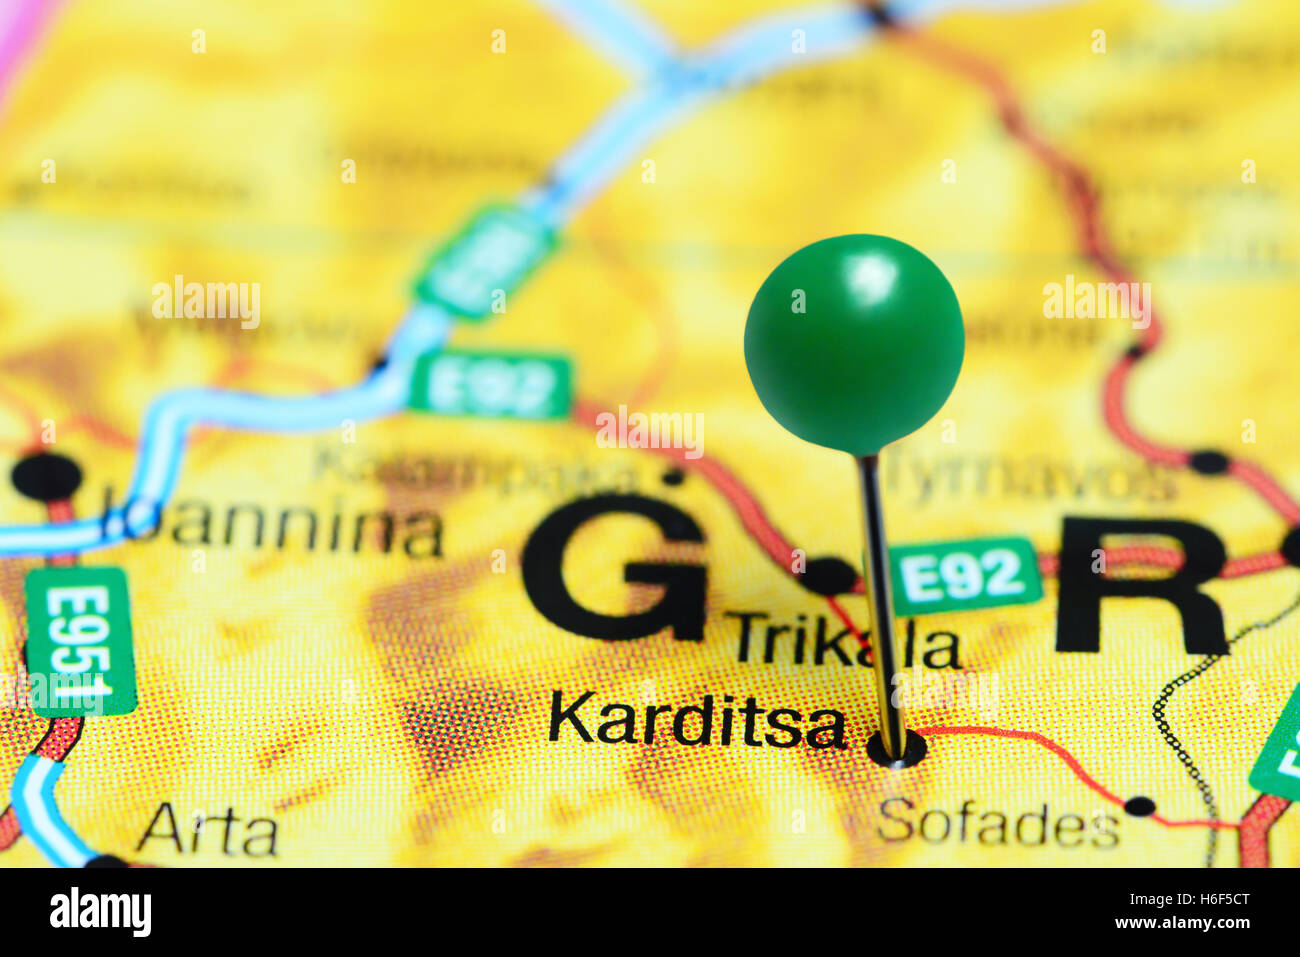 Karditsa pinned on a map of Greece Stock Photo